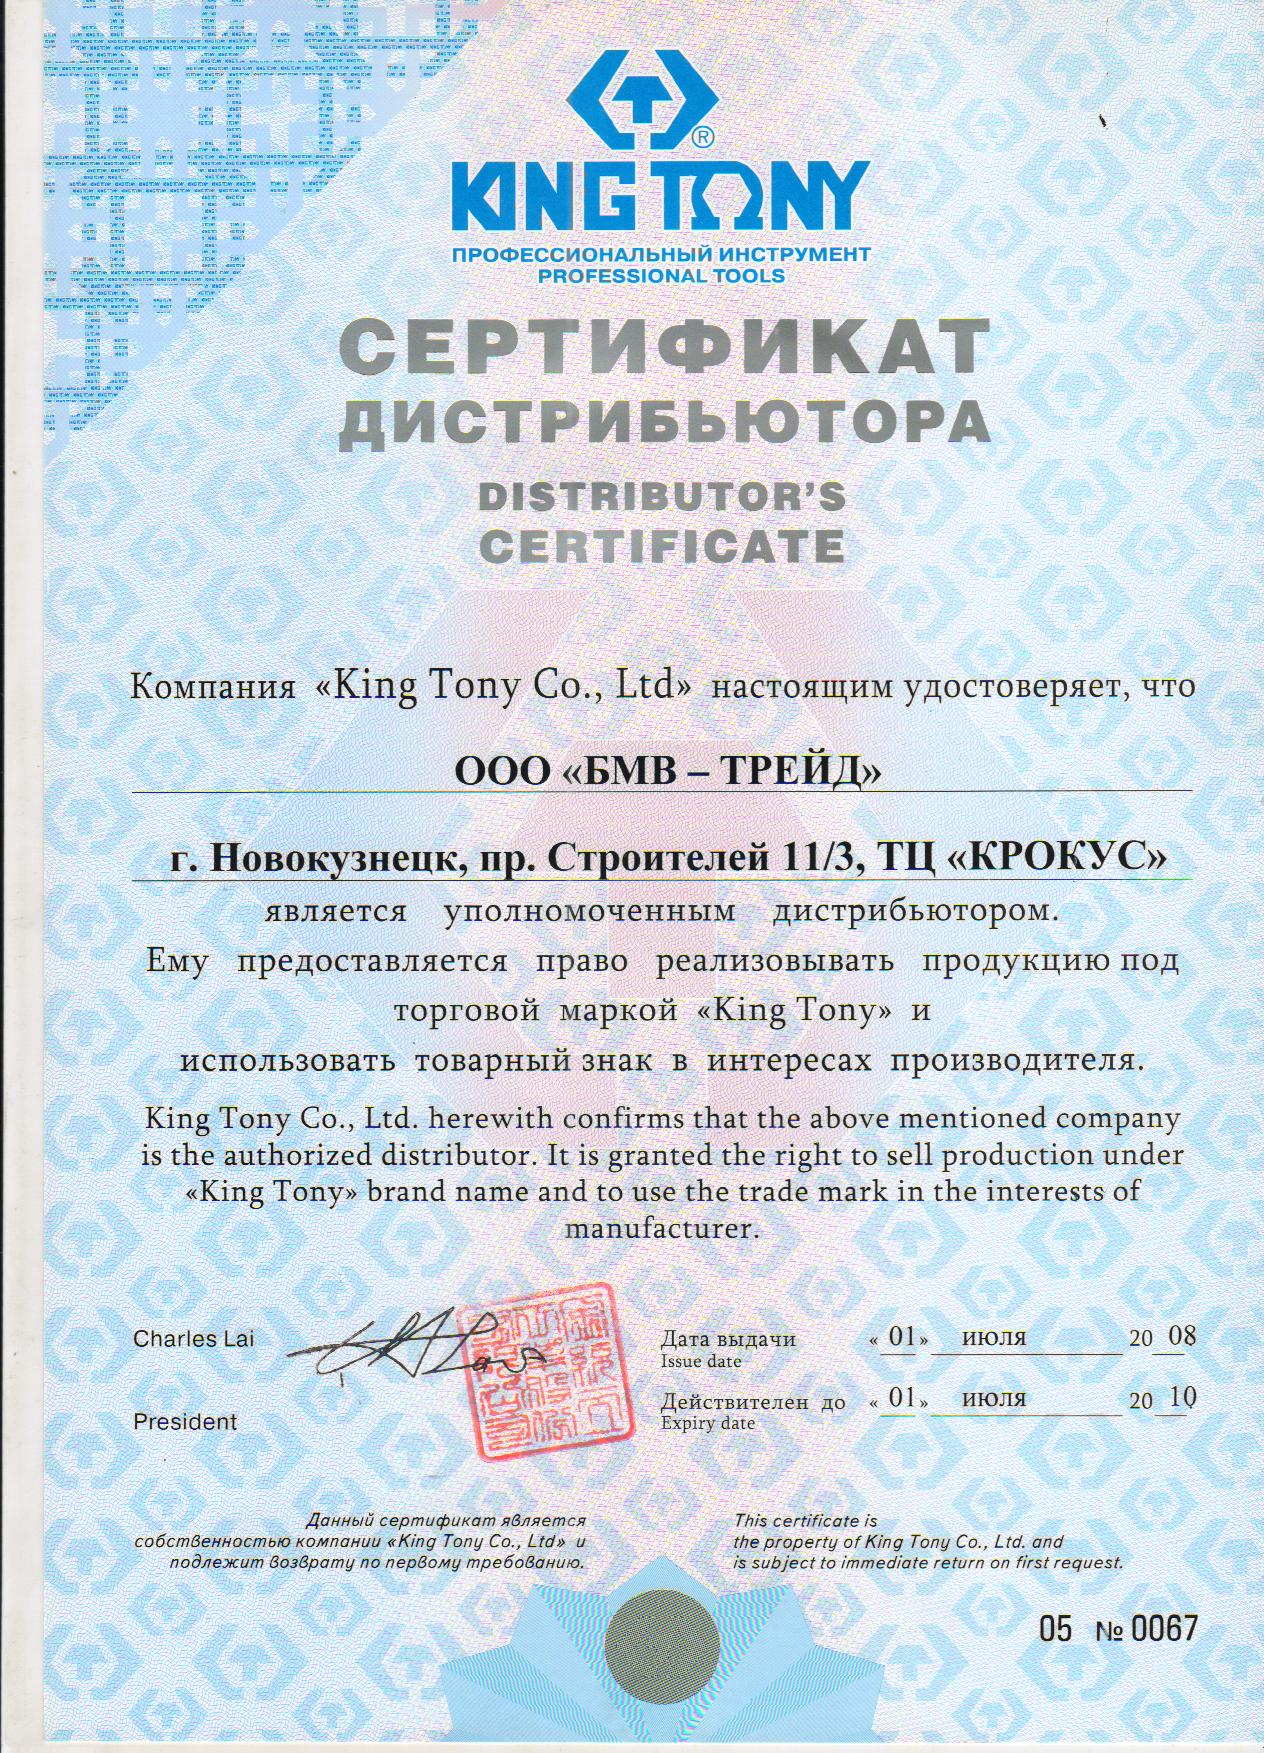 Сертификат дилера King Nony. БМВ-Трейд